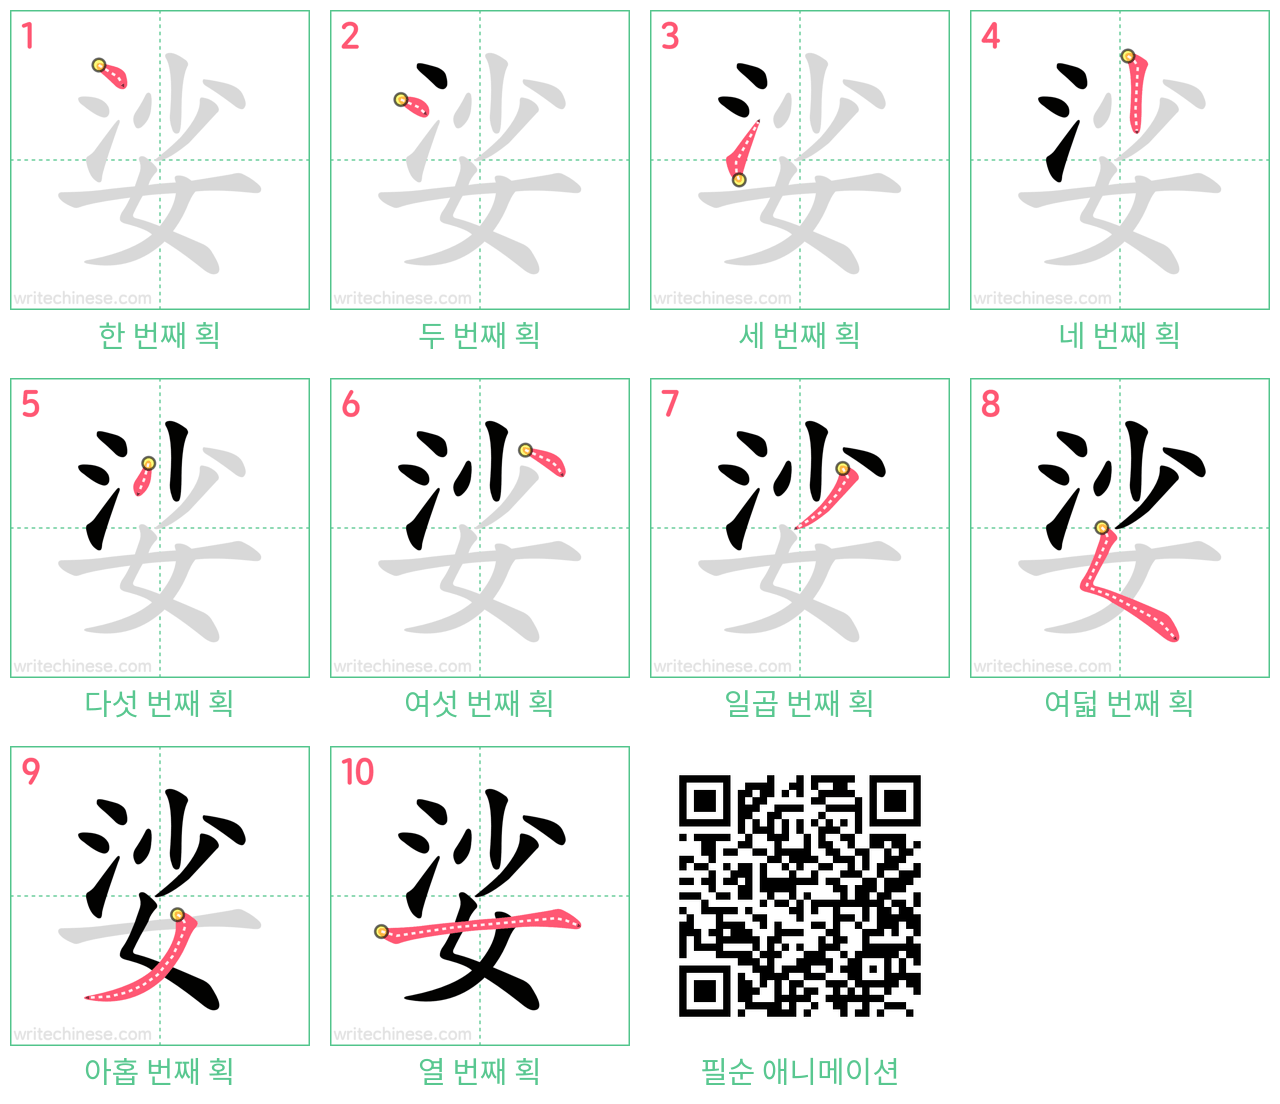 娑 step-by-step stroke order diagrams